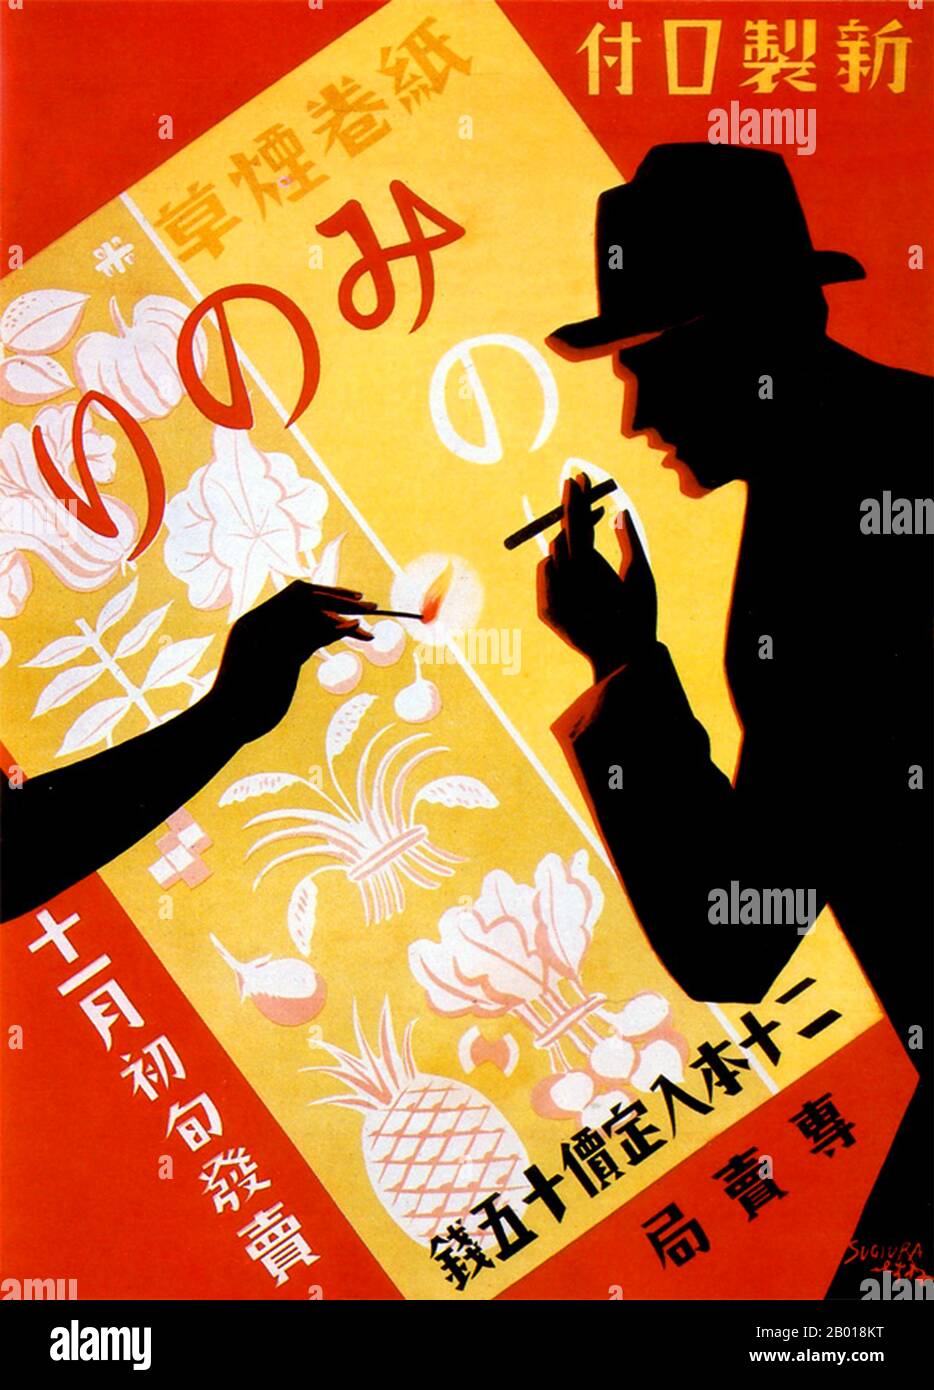 Japon: Affiche publicitaire pour les cigarettes Minori, c. 1930. 1930s style silhouette publicité pour les cigarettes Minori - un homme dans un chapeau homburg obtient une lumière d'une main silhouettée. Banque D'Images